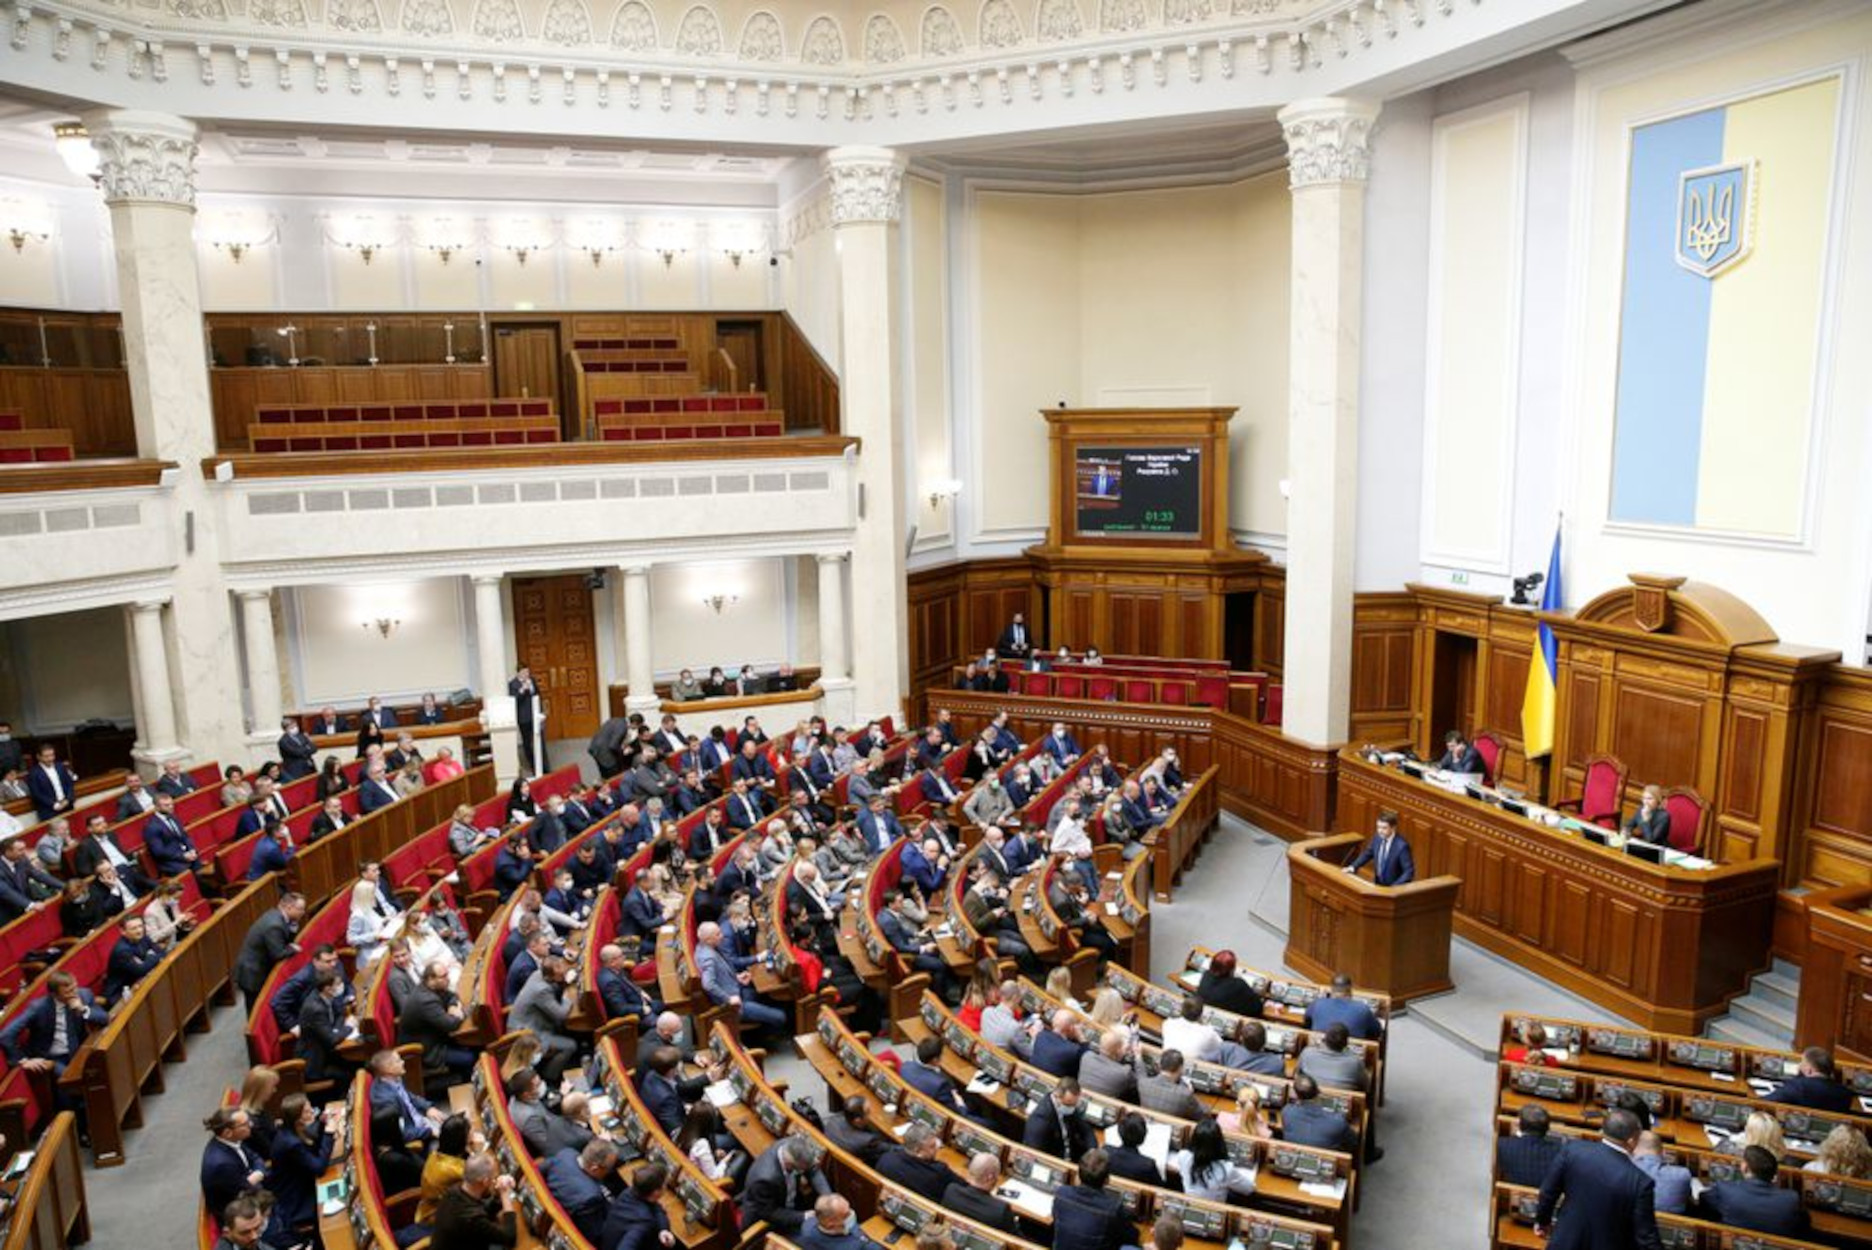 Πόλεμος στην Ουκρανία: Βουλευτής ο οποίος εκλέχτηκε με τον Ζελένσκι καταζητείται για εσχάτη προδοσία